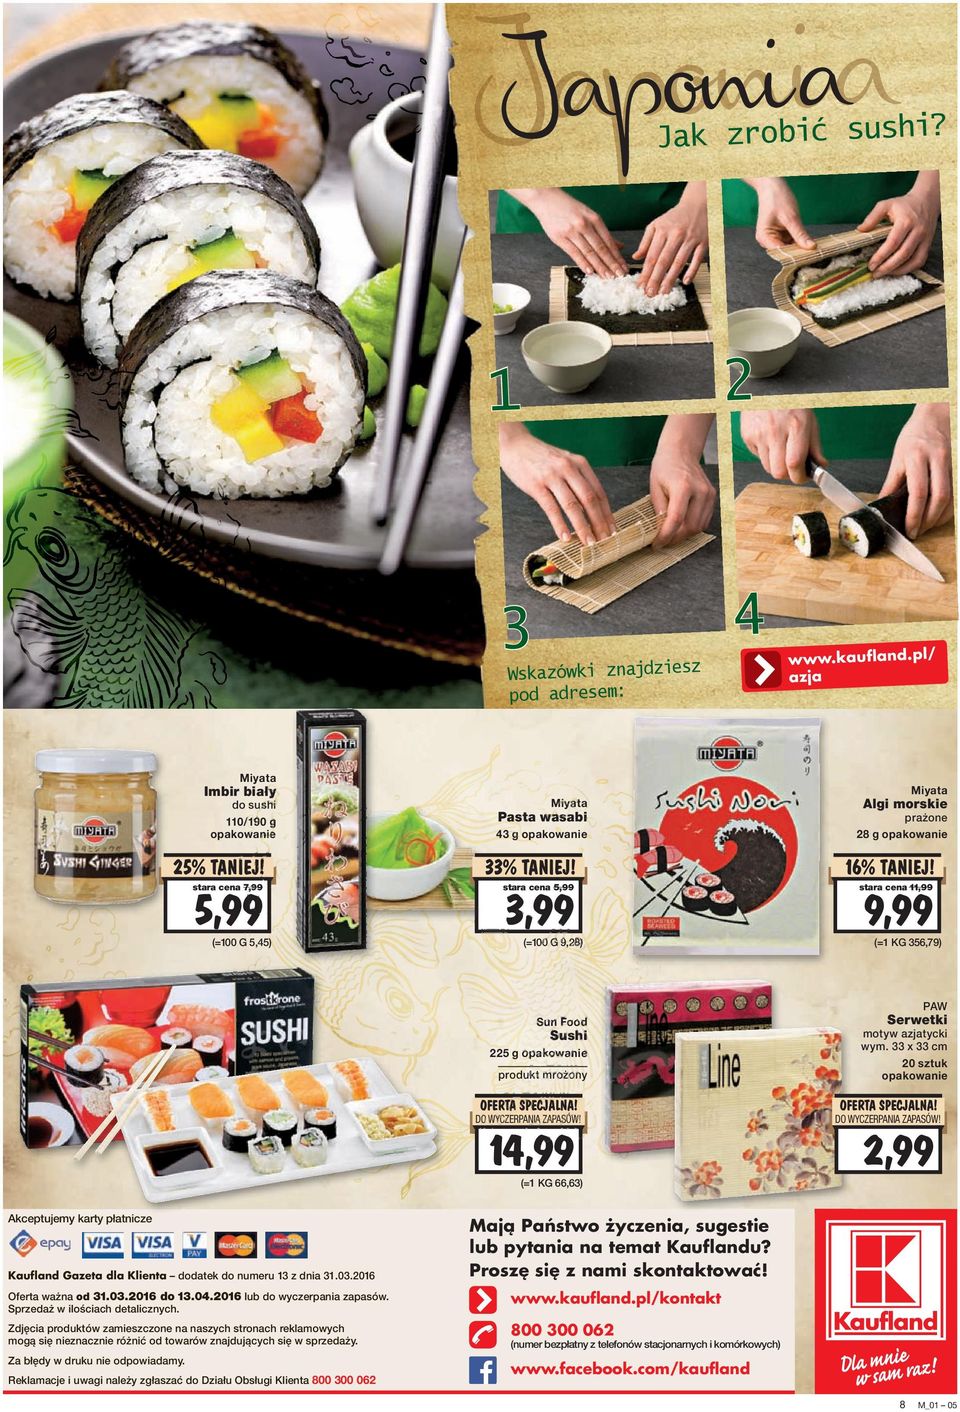 5,99 stara cena 11,99 stara cena 7,99 (=100 G 5,45) (=100 G 9,28) 9,99 (=1 KG 356,79) PAW Sun Food Sushi 225 g 14,99 (=1 KG 66,63) Akceptujemy karty płatnicze Kaufland Gazeta dla Klienta dodatek do